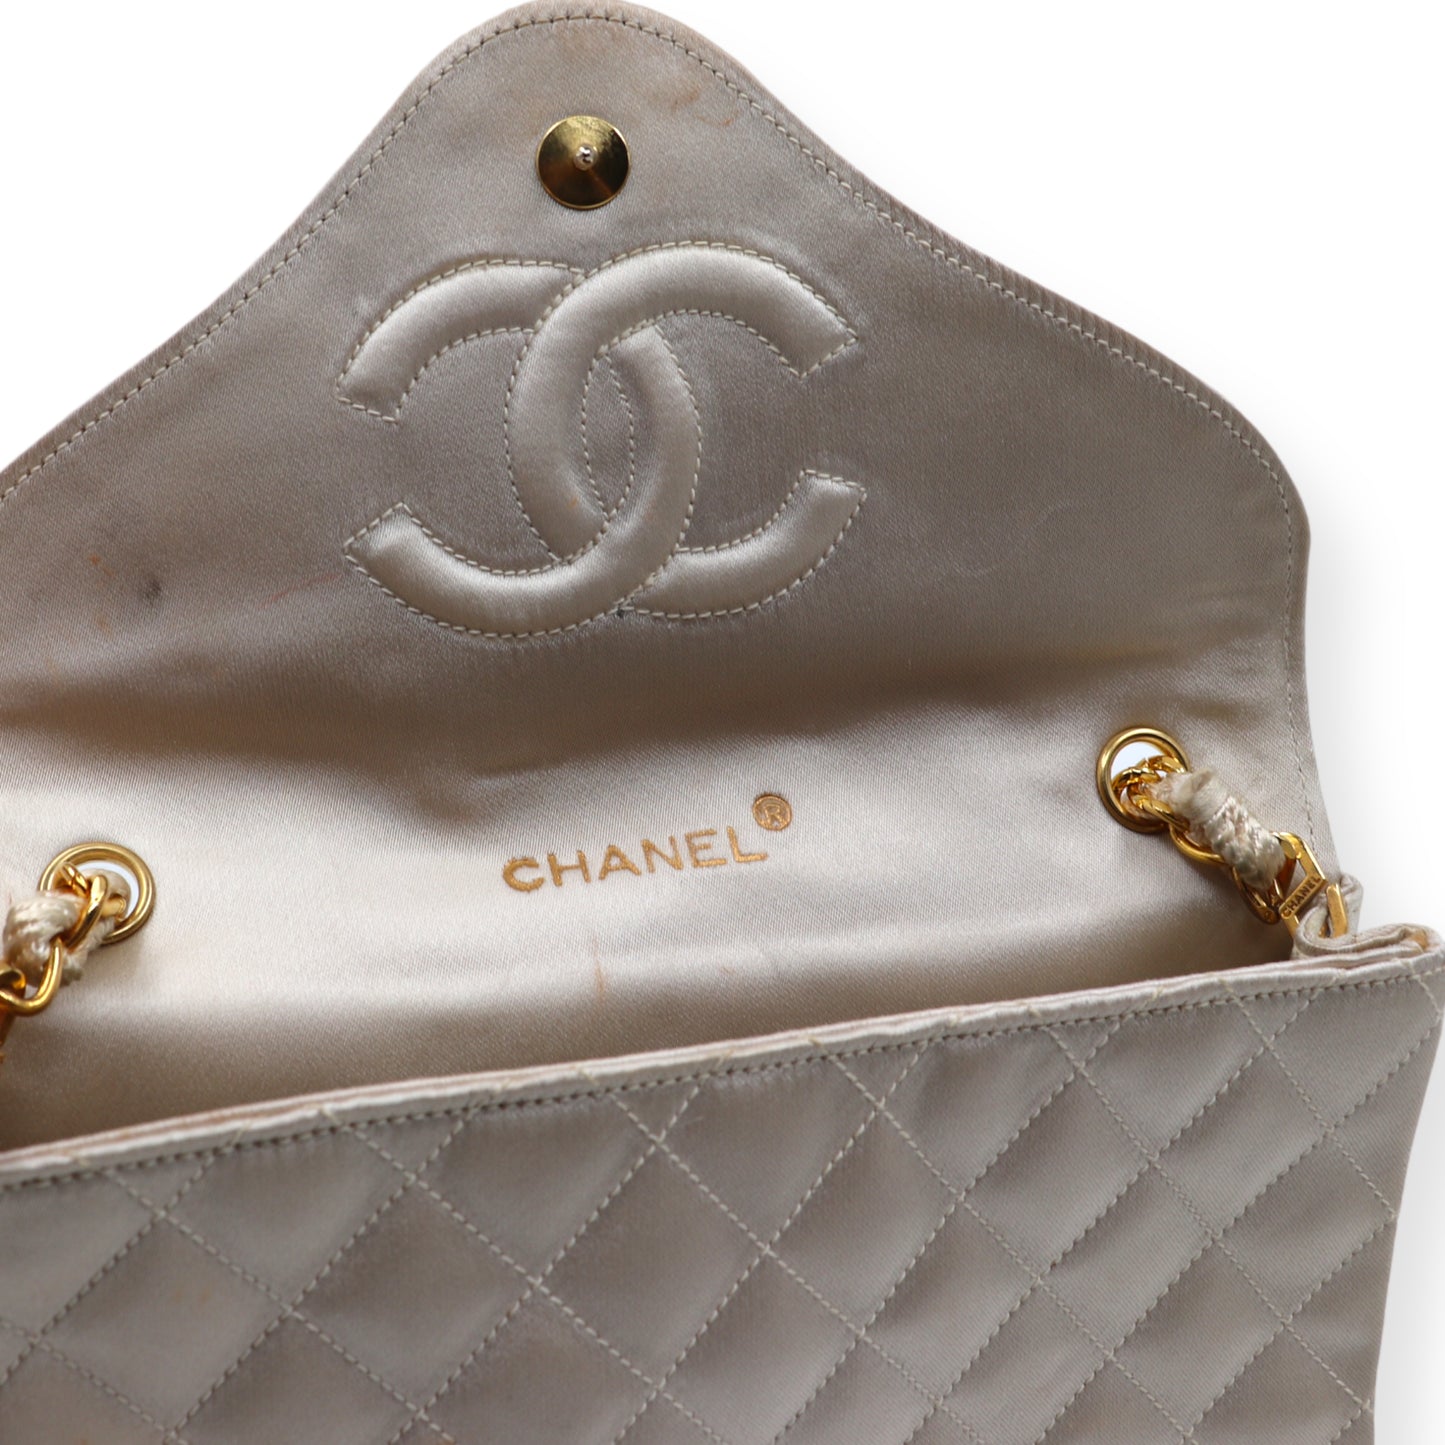 Chanel Umhängetasche Satin beige